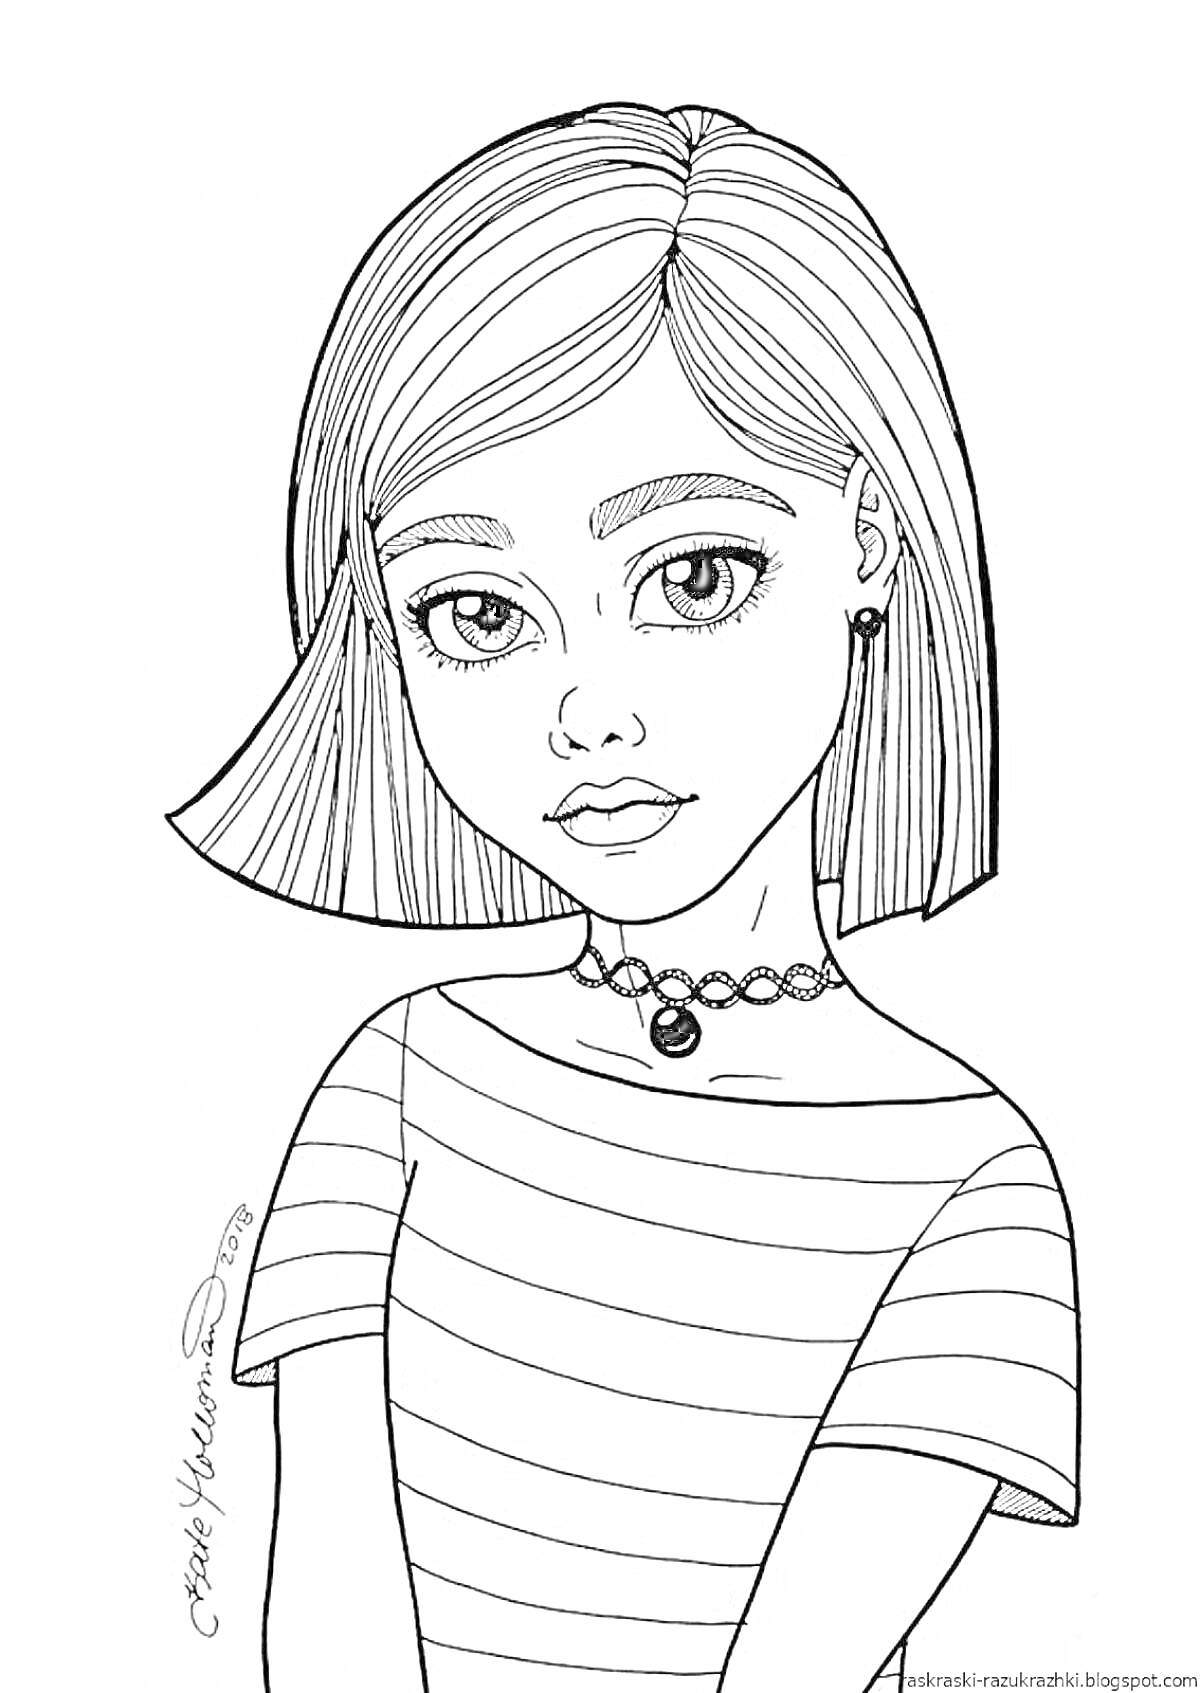 Раскраска Девочка с короткими волосами в полосатой футболке и чокером.